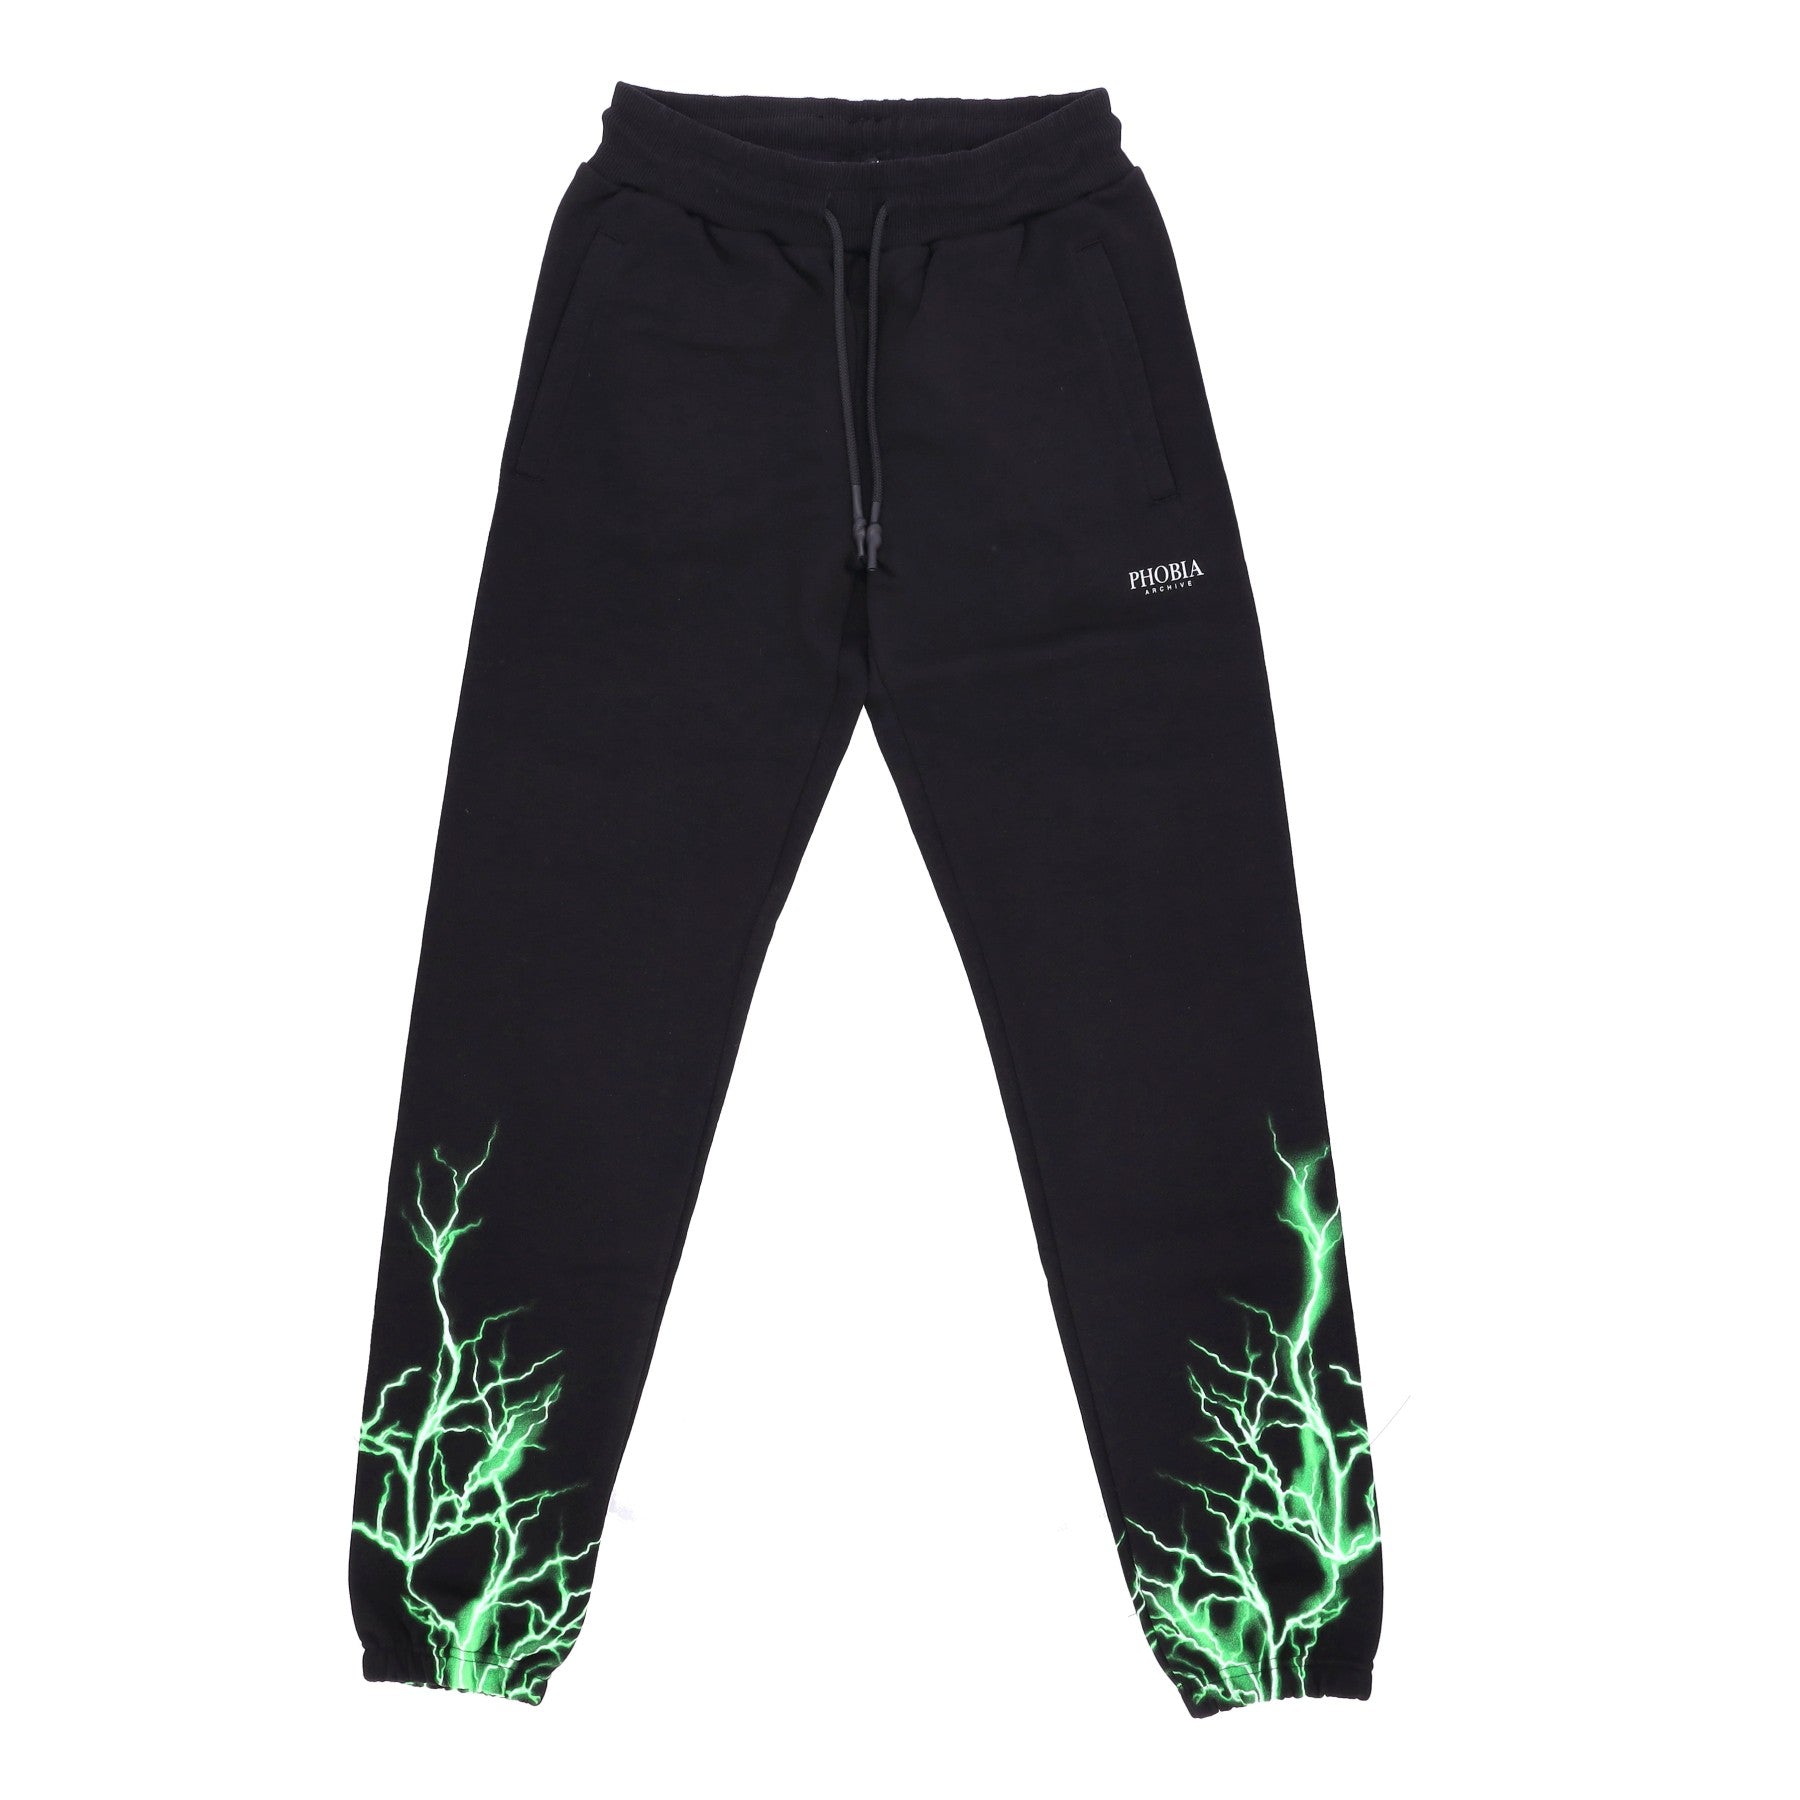 Phobia, Pantalone Tuta Leggero Uomo Lightning Pants, Black/green